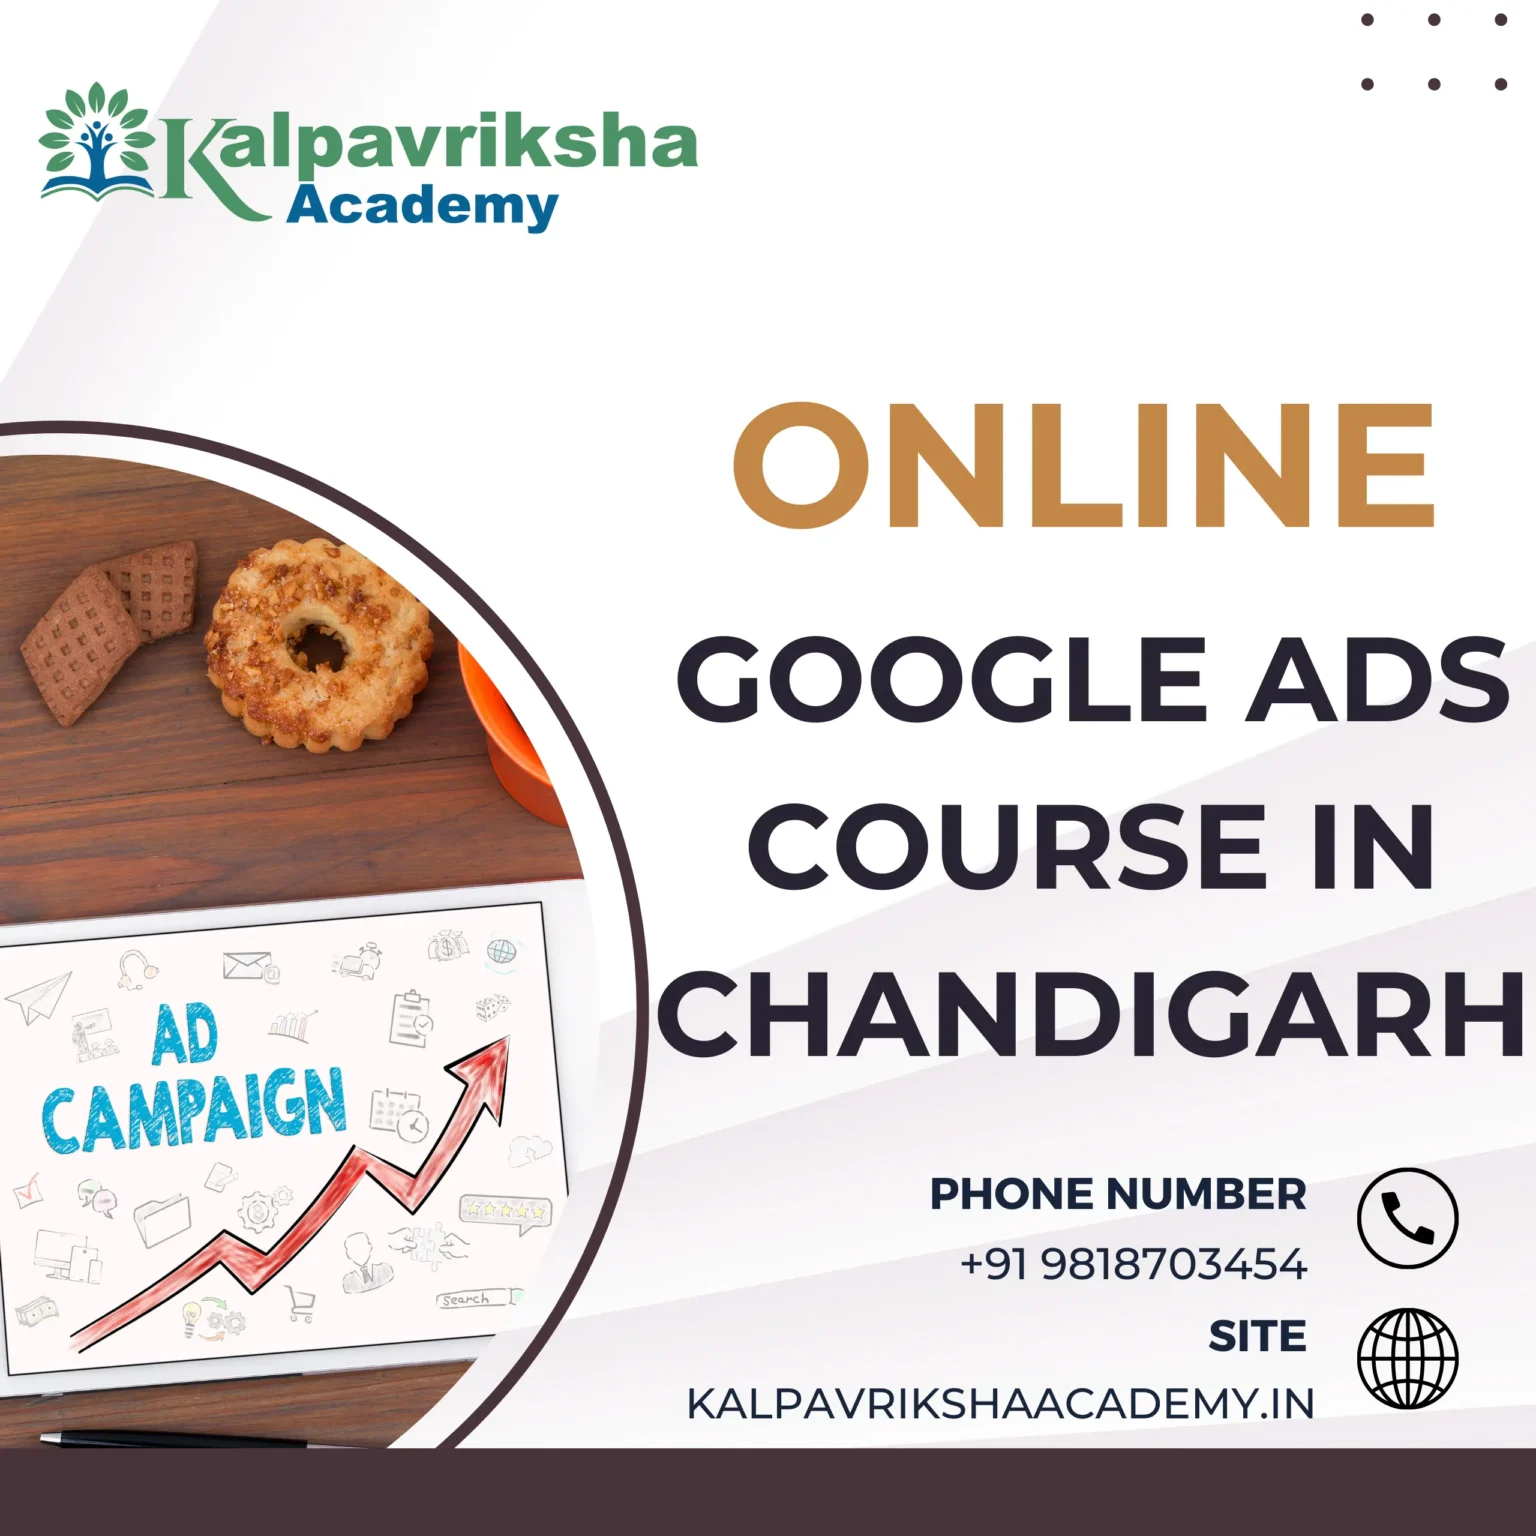 Google Ads Course In Chandigarh - Kalpavriksha Academy